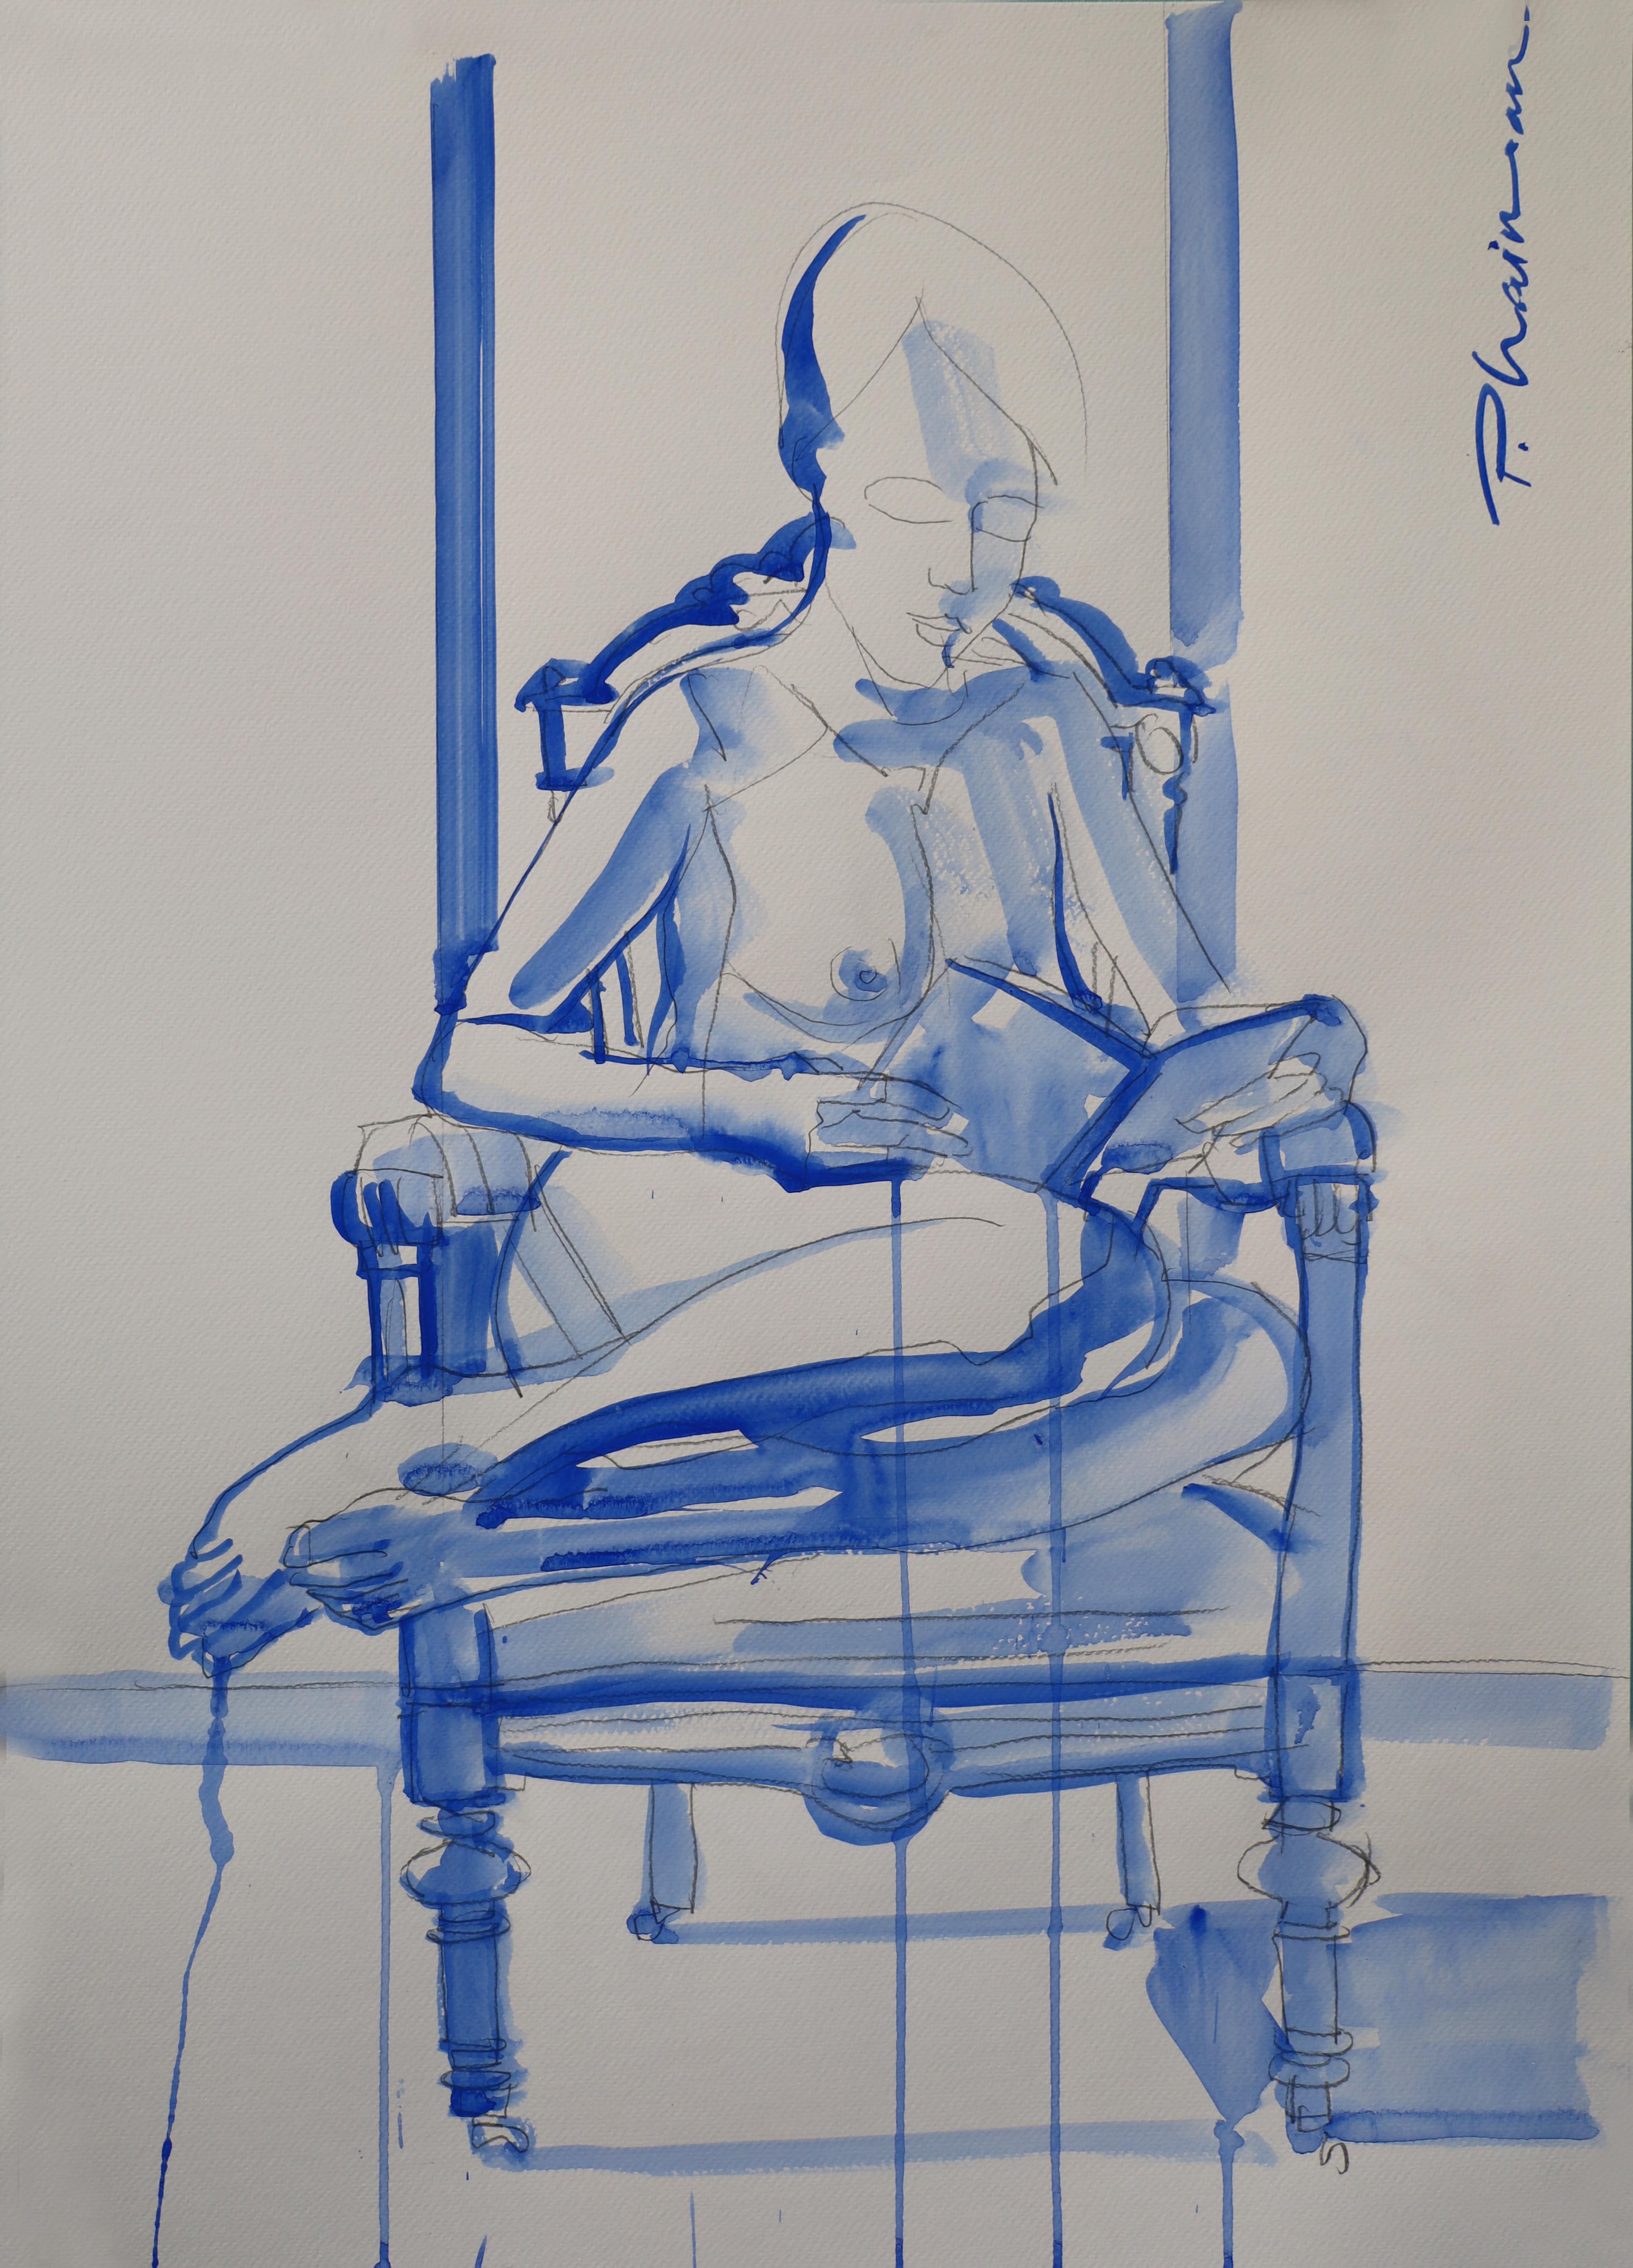 Sitzen auf dem Sessel, Akt, Bleistift und Tempera auf Papier, inspiriert von Matisse.
Teil der Serie Nude in Interior.

Größe 27,5x19,5in / 70x50cm auf schwerem Aquarellpapier, mit Ultramarinblau.
Wird gerollt in einer Tube geliefert,  aus Florida,